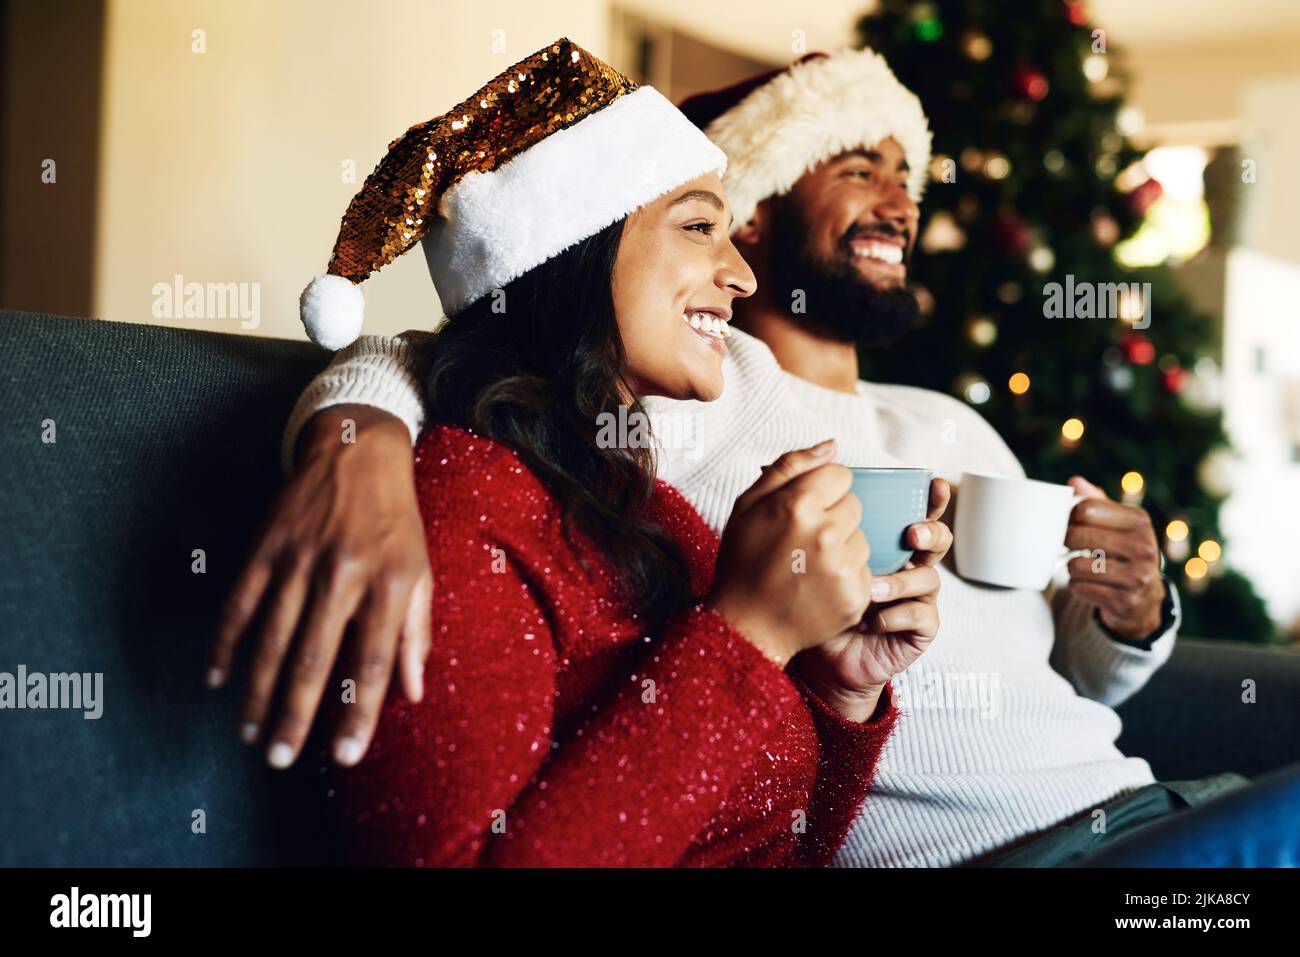 Heiße Schokolade und frohe Weihnachtserinnerungen. Ein glückliches junges Paar, das sich zu Hause auf dem Sofa entspannt und zu Weihnachten warme Getränke trinkt. Stockfoto